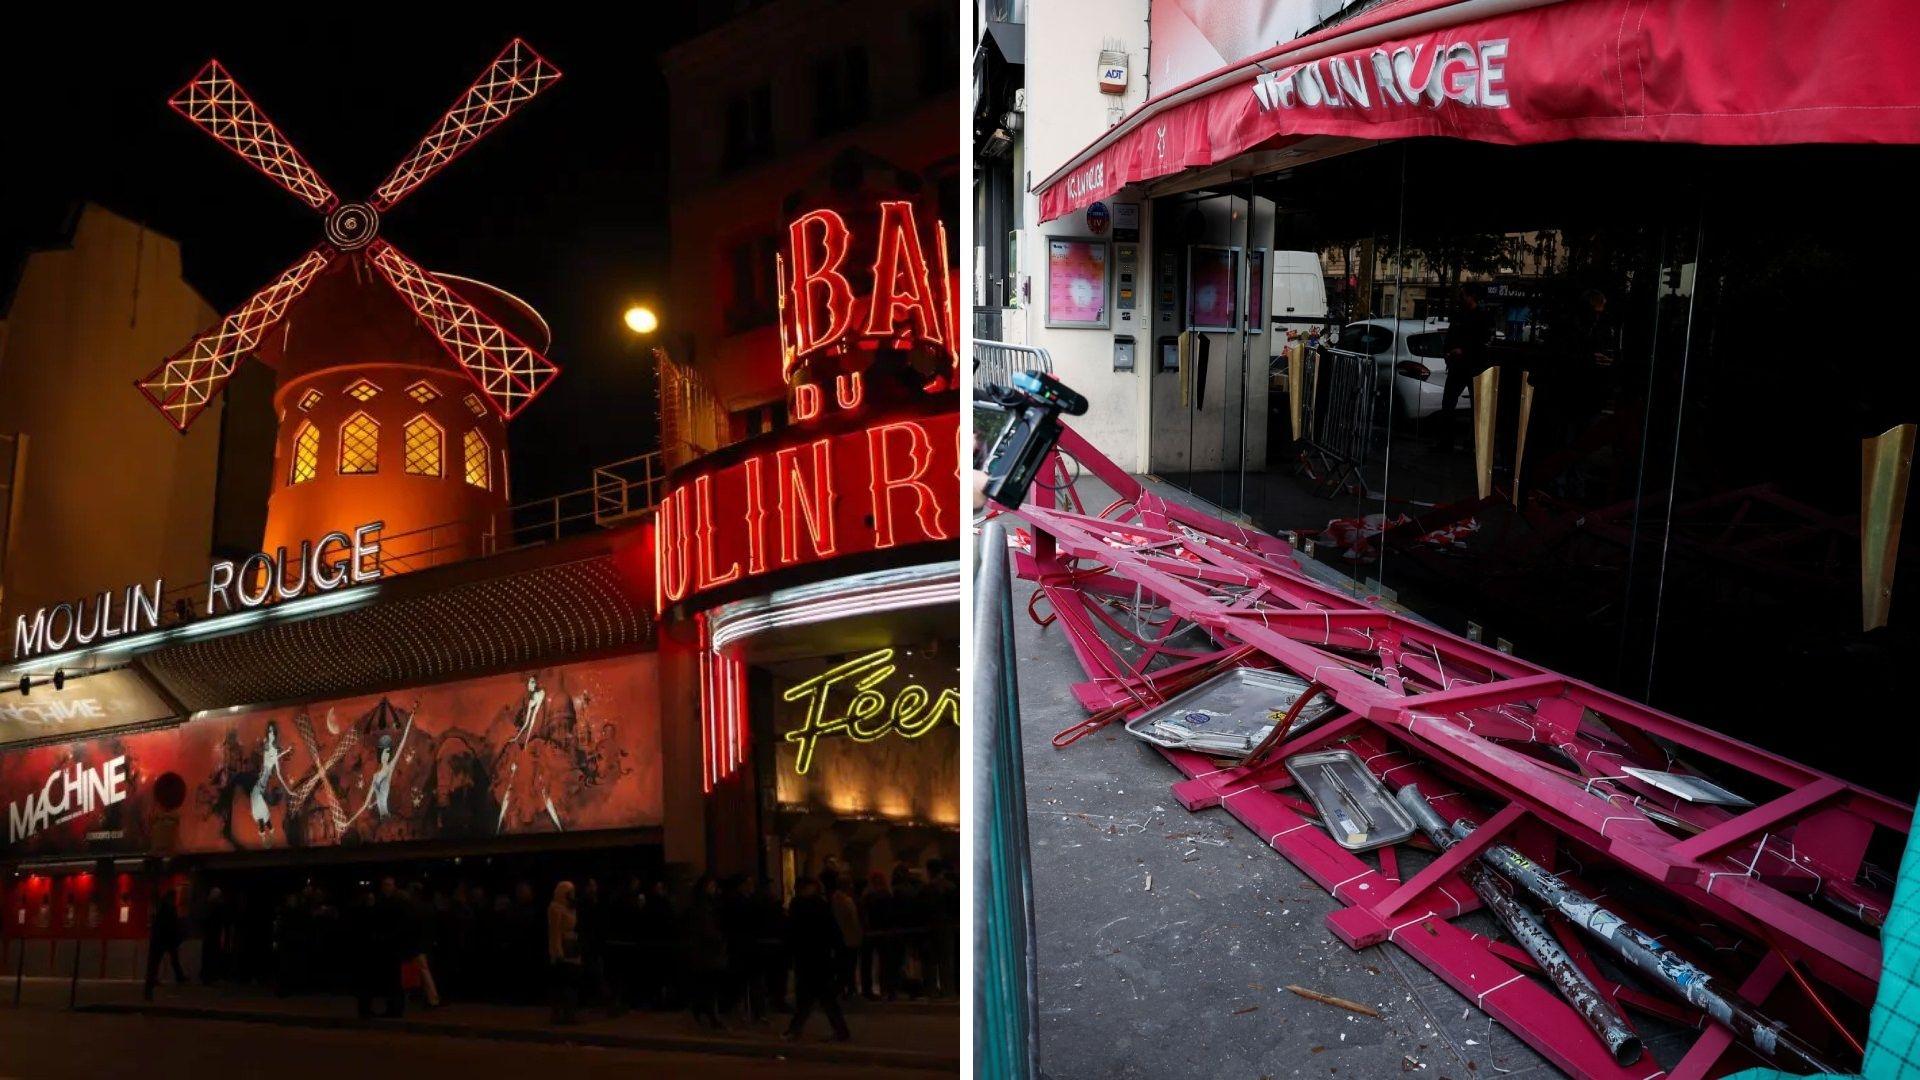 El Moulin Rouge, una de las atracciones turísticas de la capital francesa